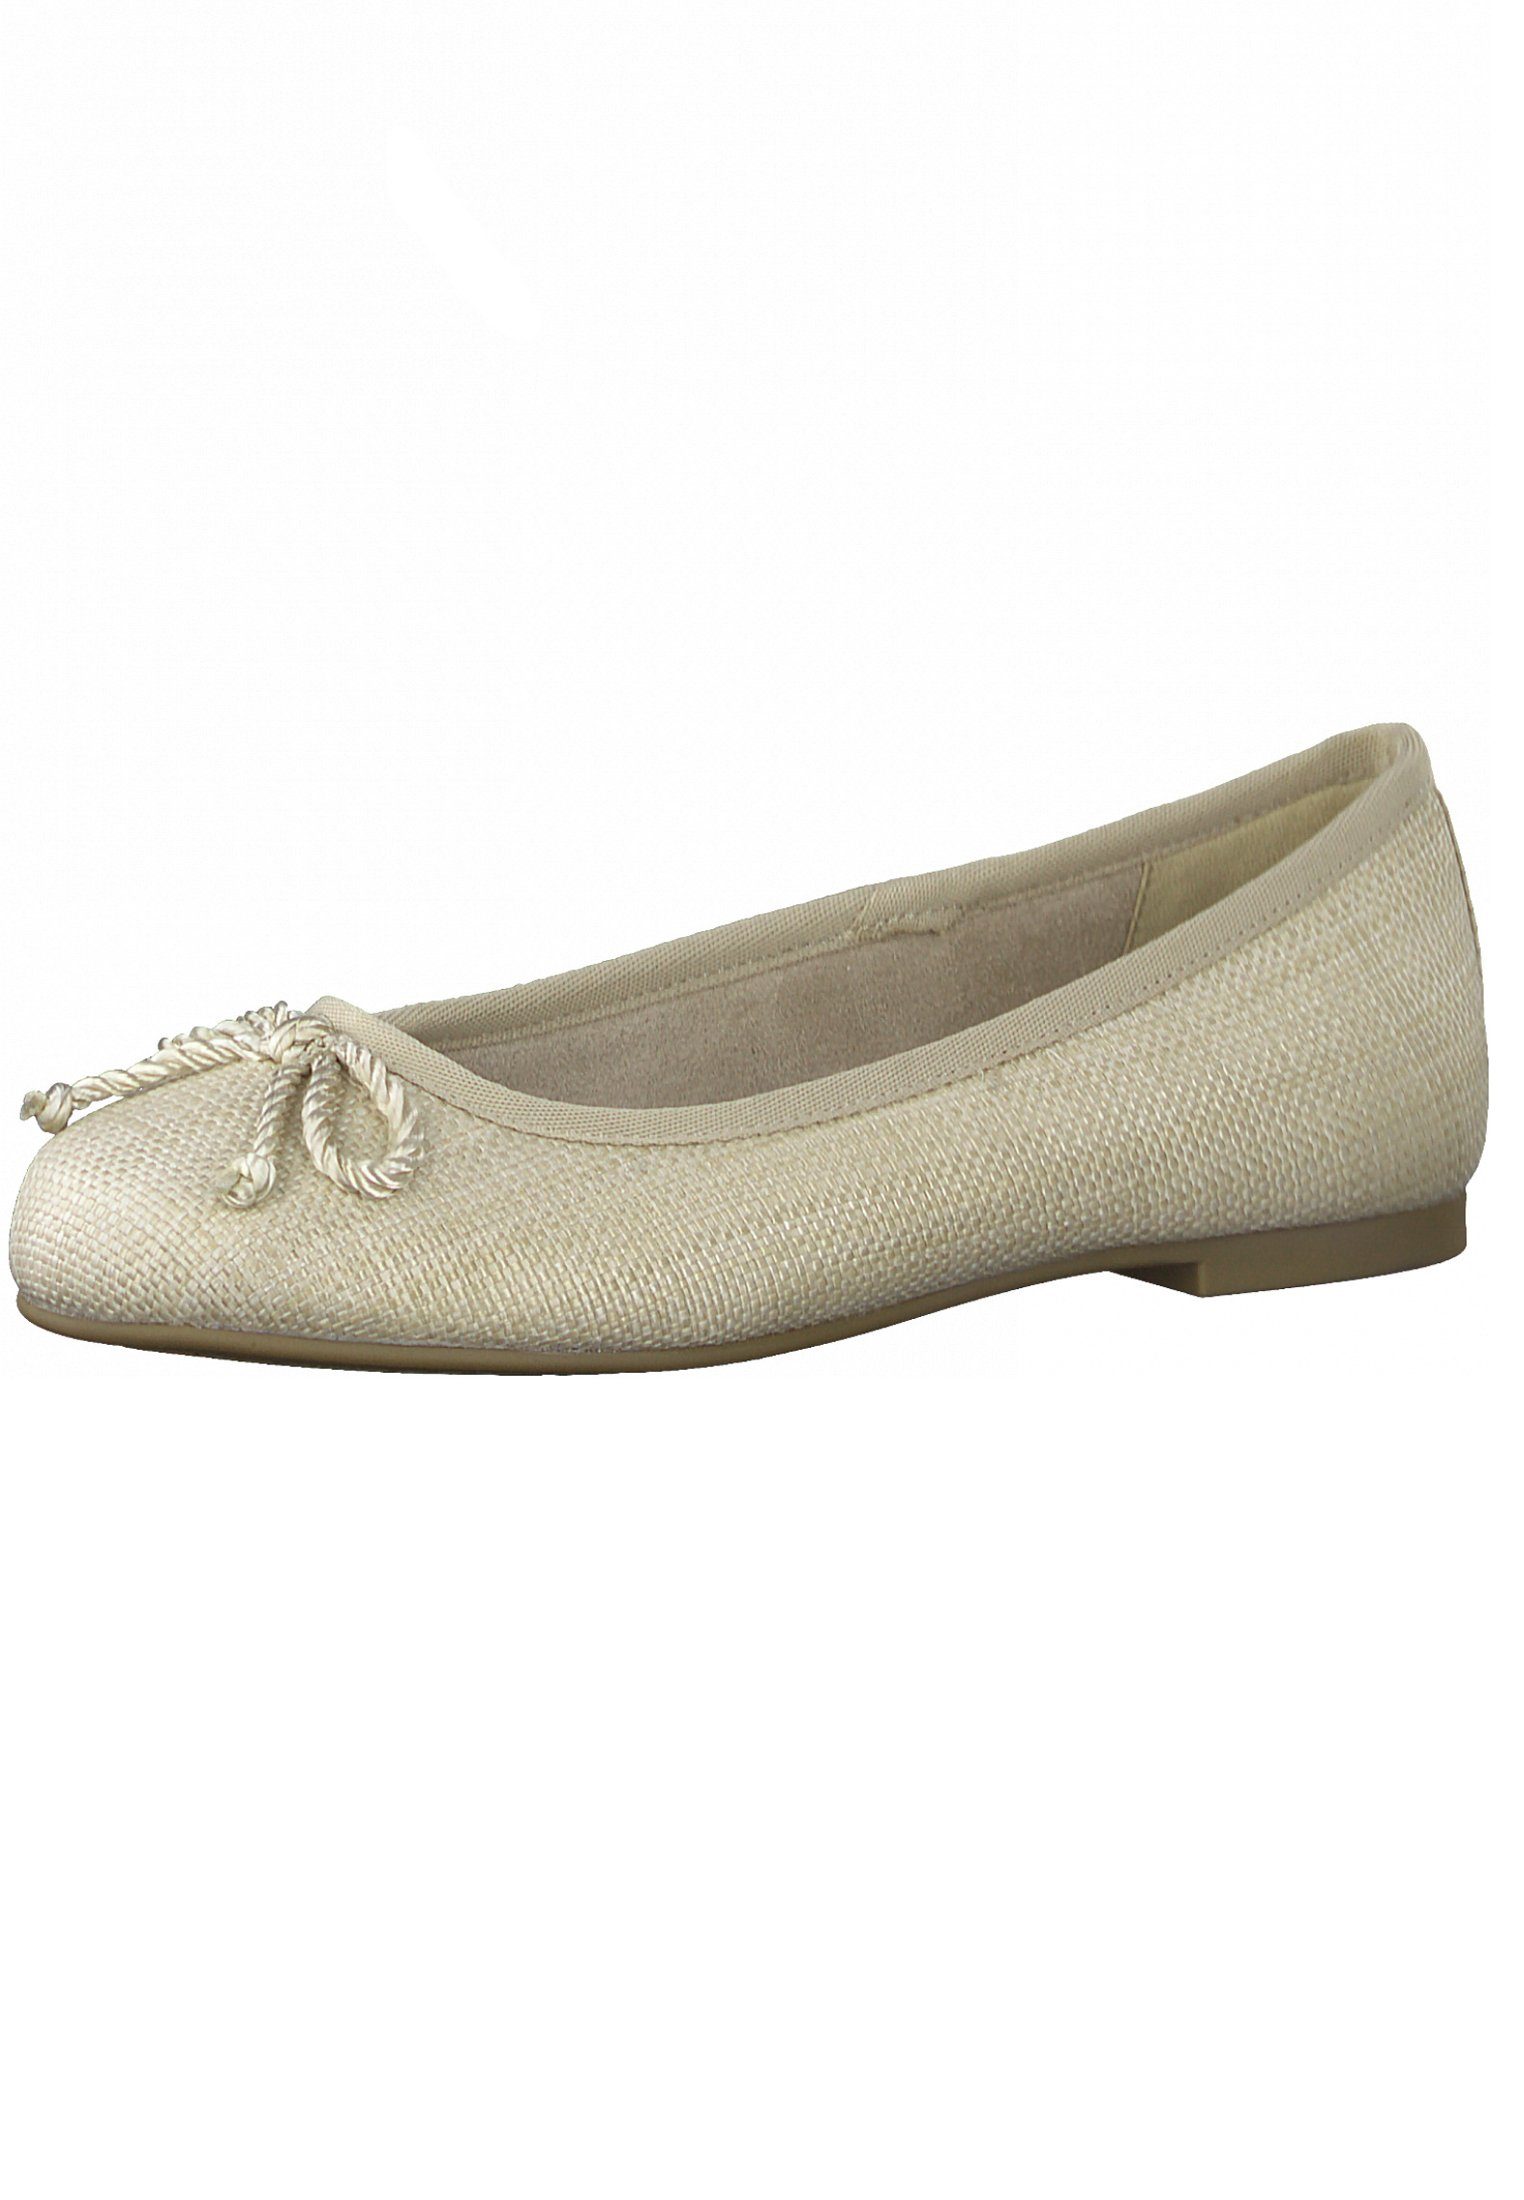 Schuhe Klassische Ballerinas Tamaris 1-22111-28 482 Ivory Woven Ballerina